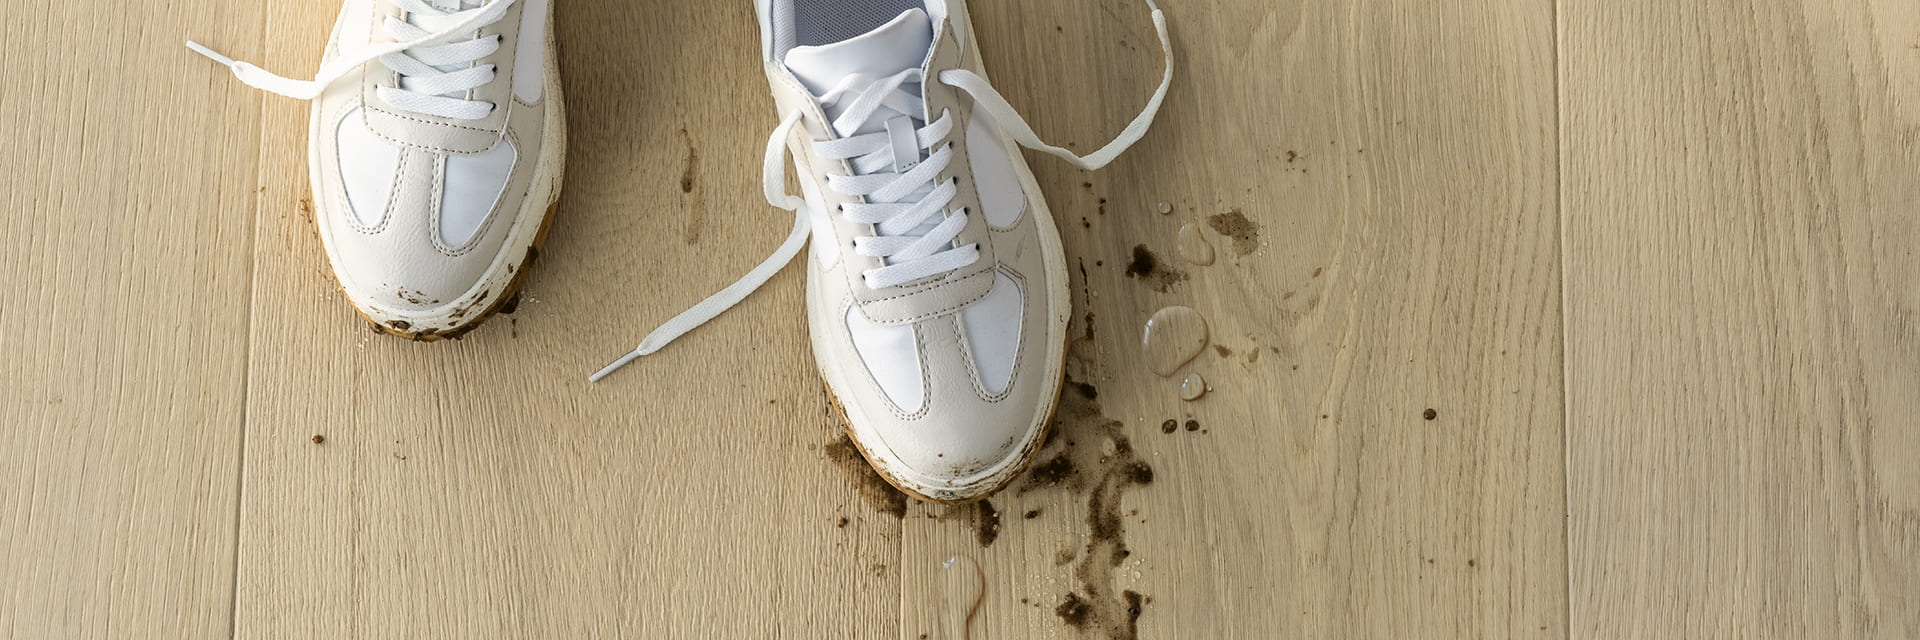 lähikuva likaisista kengistä, joista on roiskunut mutaa ja vettä beigenväriselle puulattialle